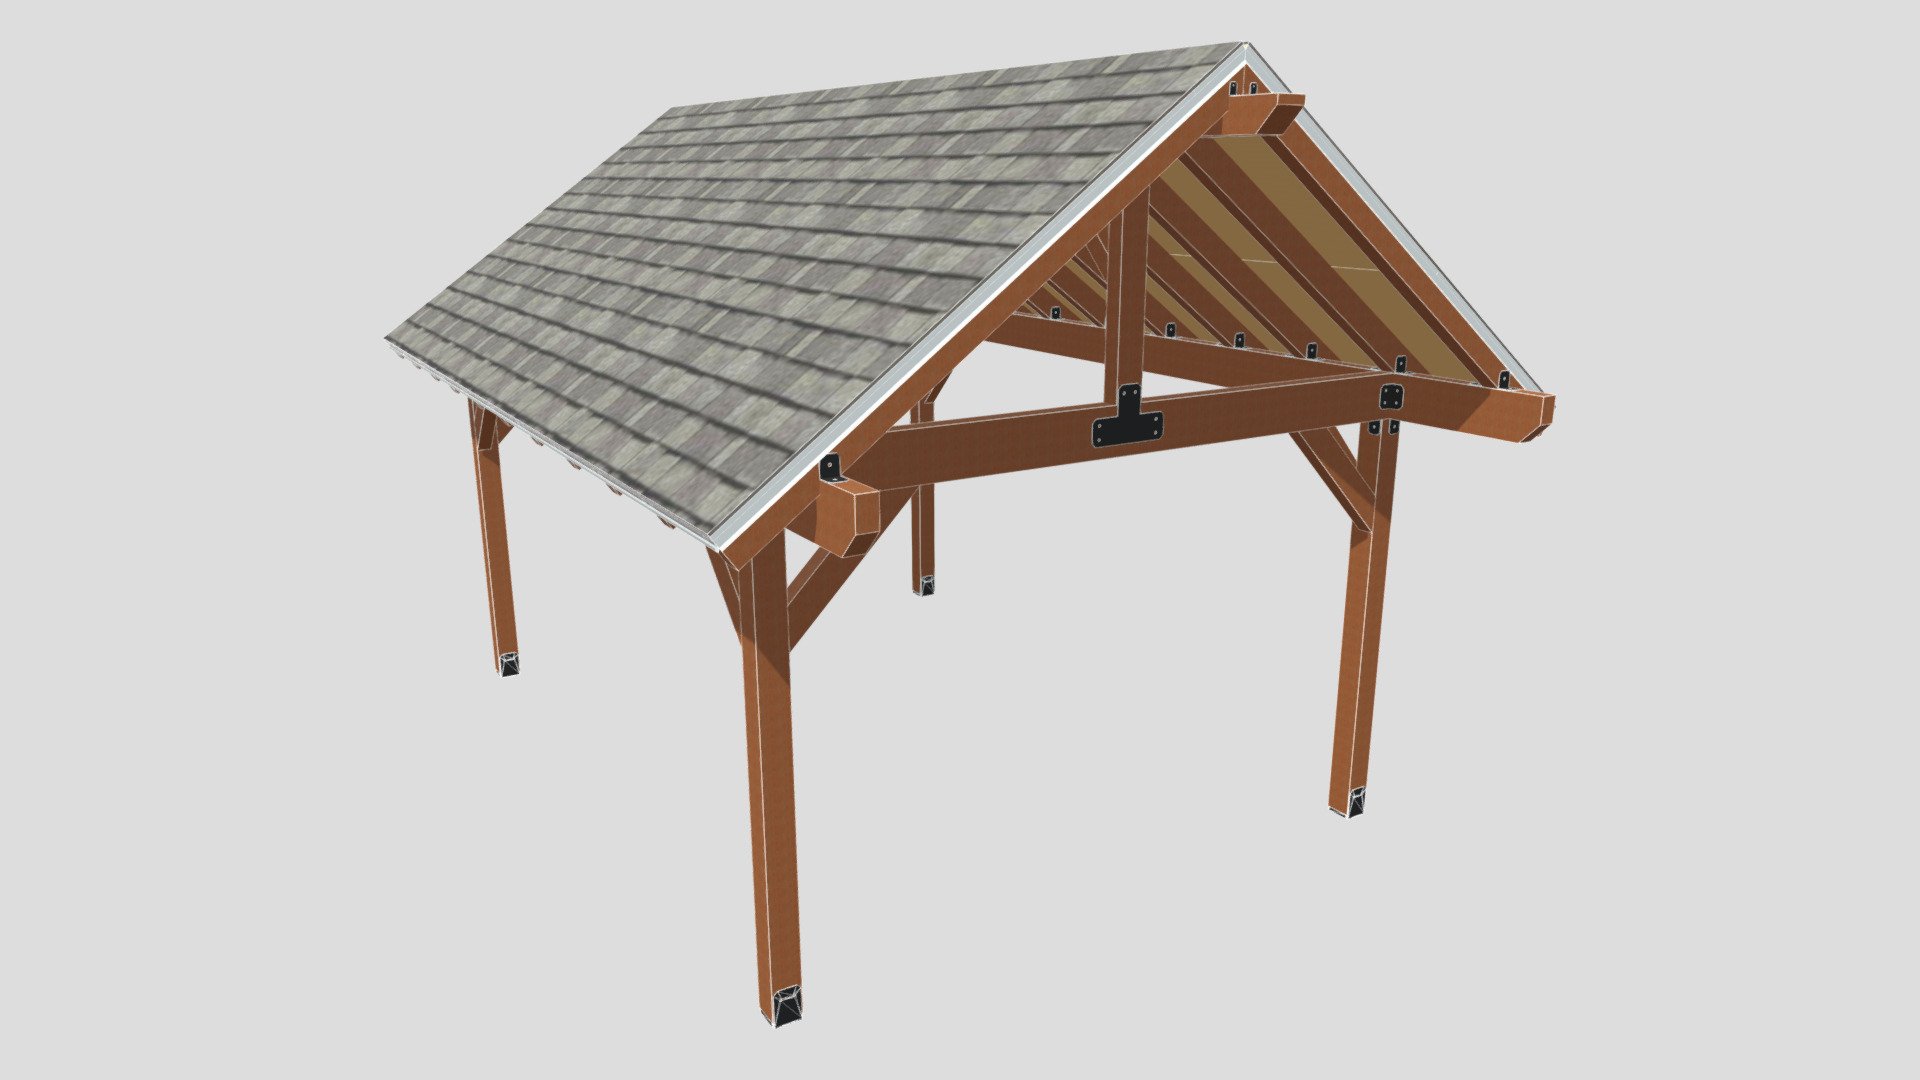 12x16 Pavilion - Gable Roof - 12x16 Pavilion - Gable Roof - 3D model by emreprojecelik 3d model